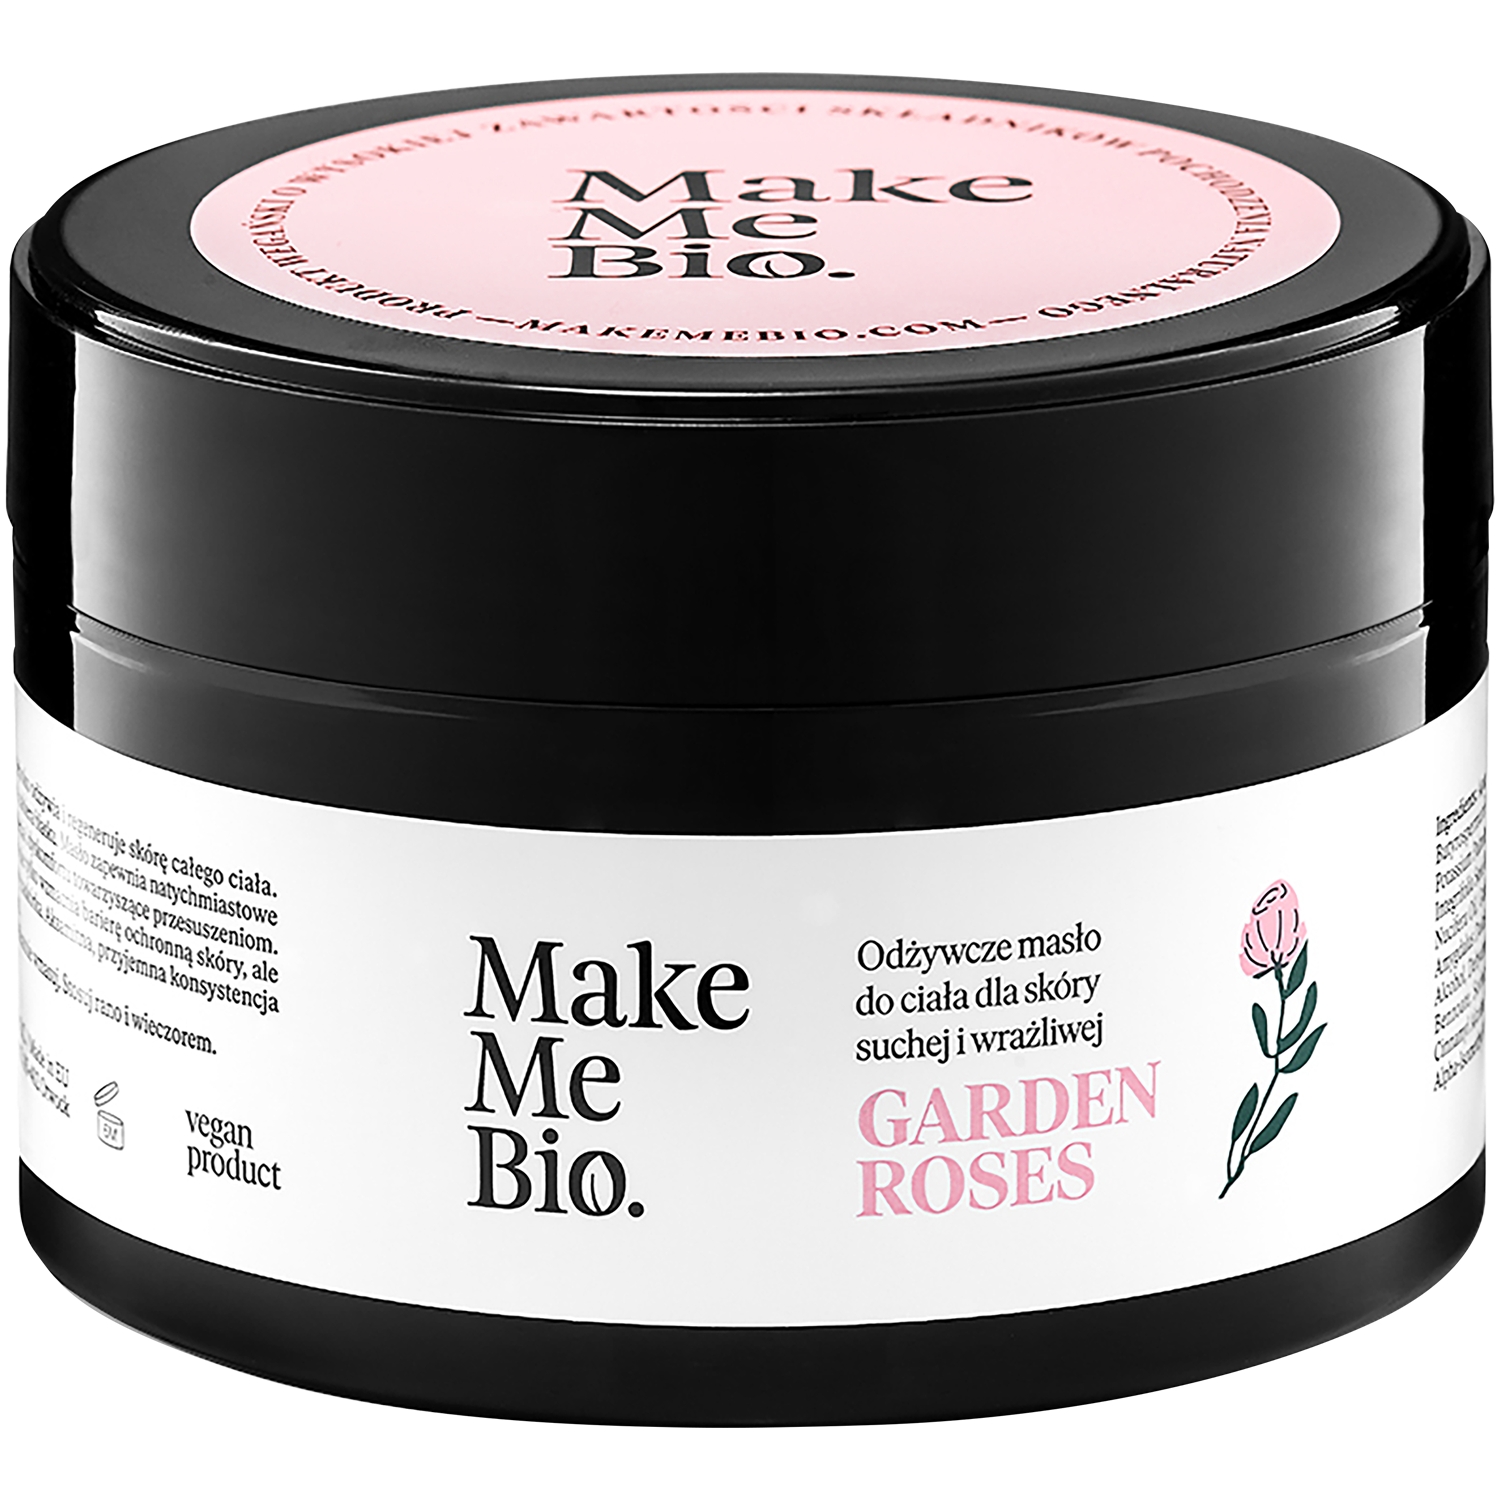 Make Me Bio Garden Rose масло для тела, 230 мл